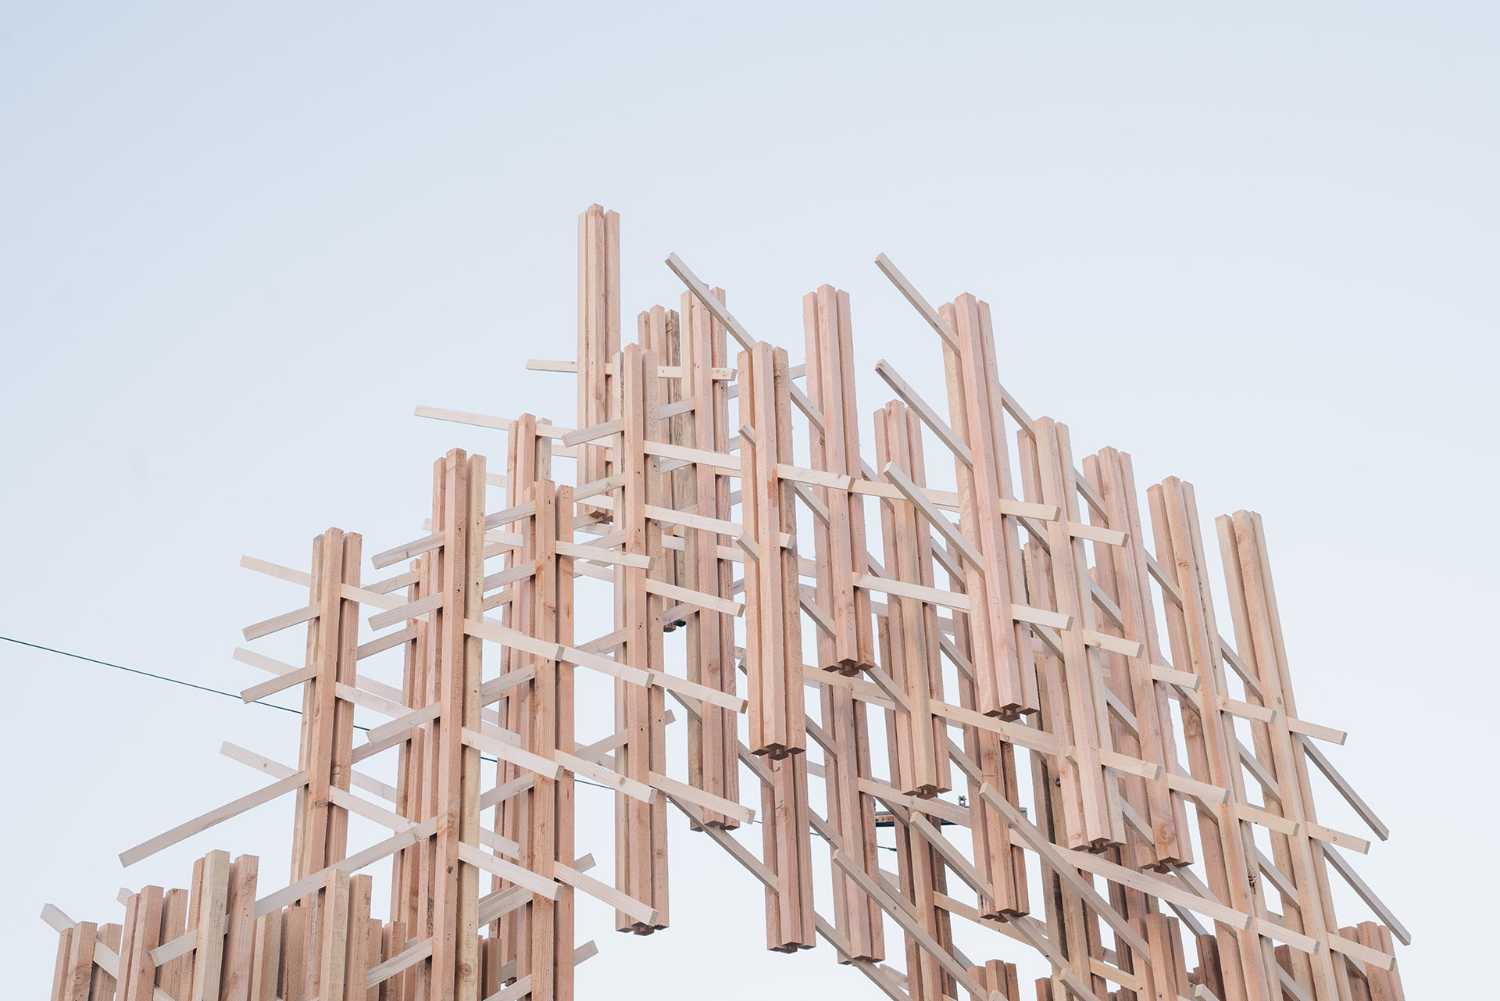 Mori. Una instalación de madera en Los Ángeles que conceptualiza el sentido de unión